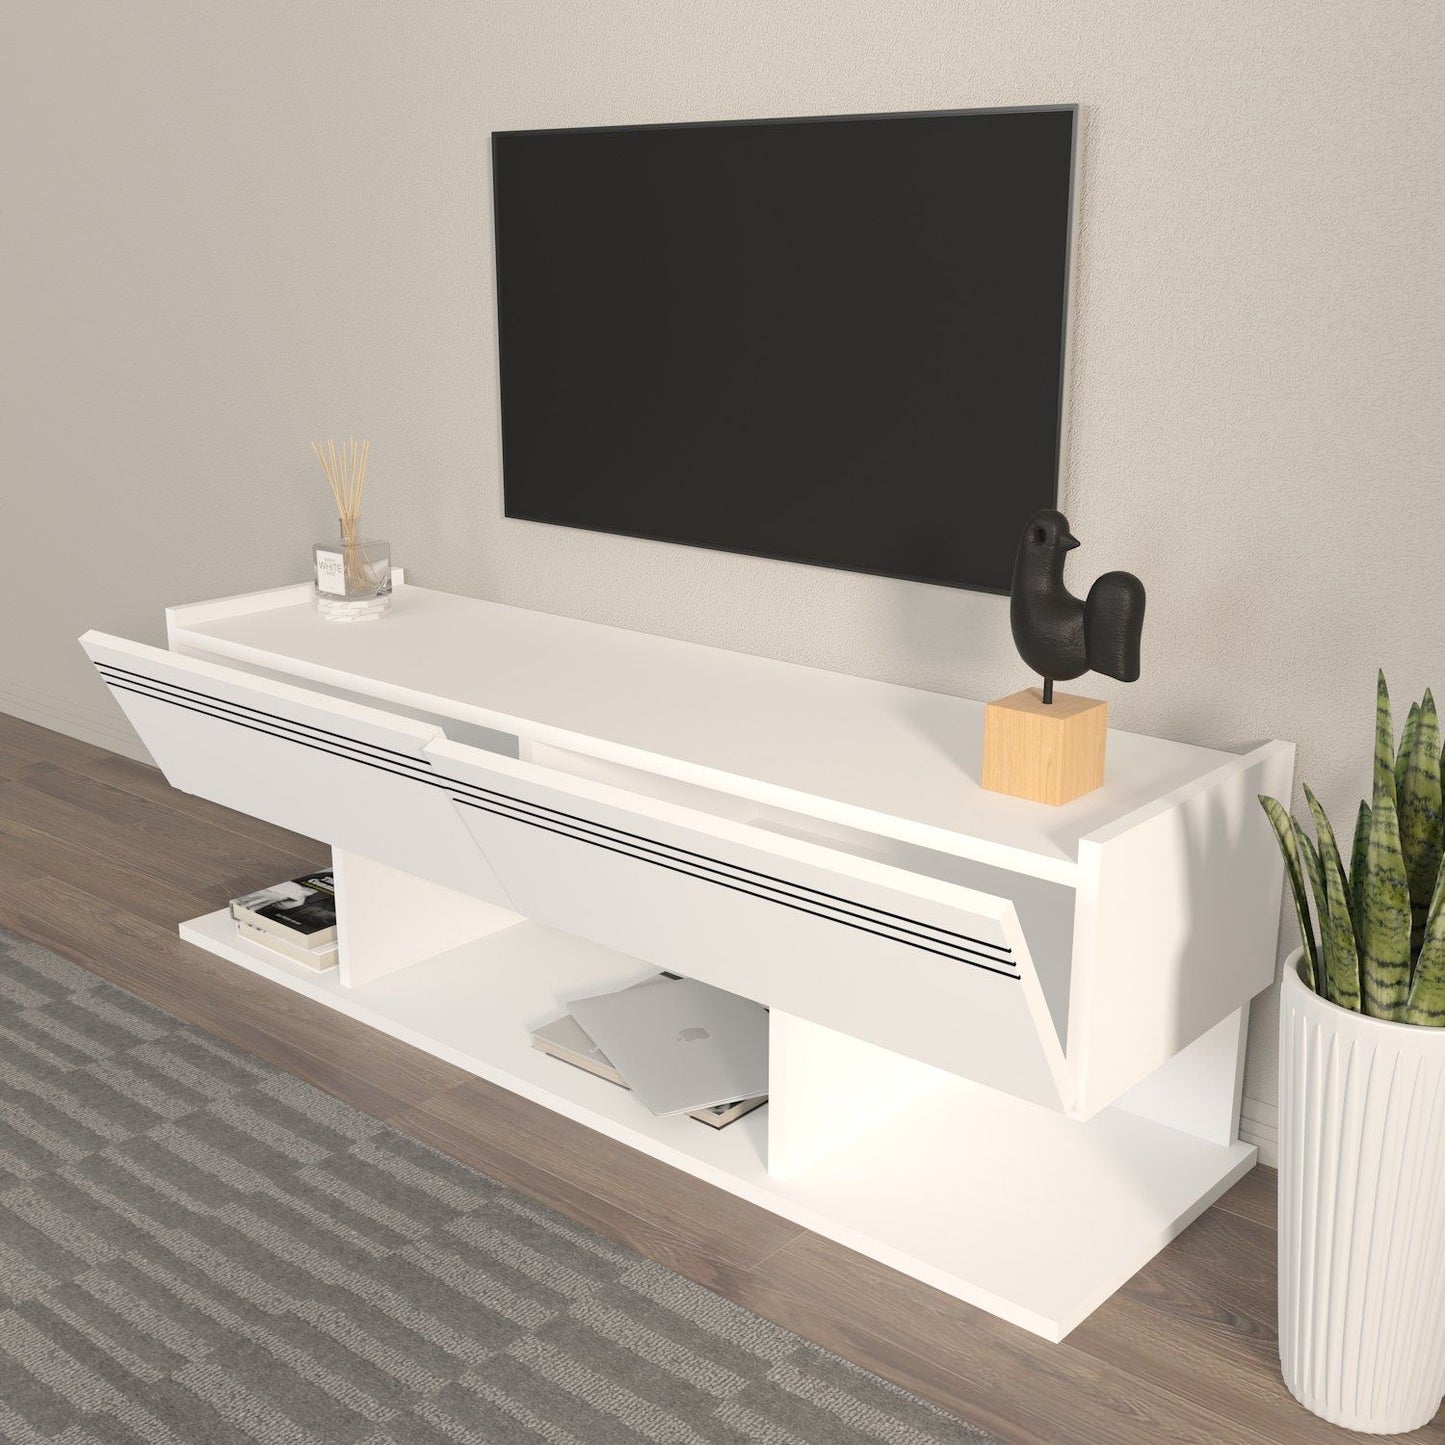 Kae - Hvid - TV bord